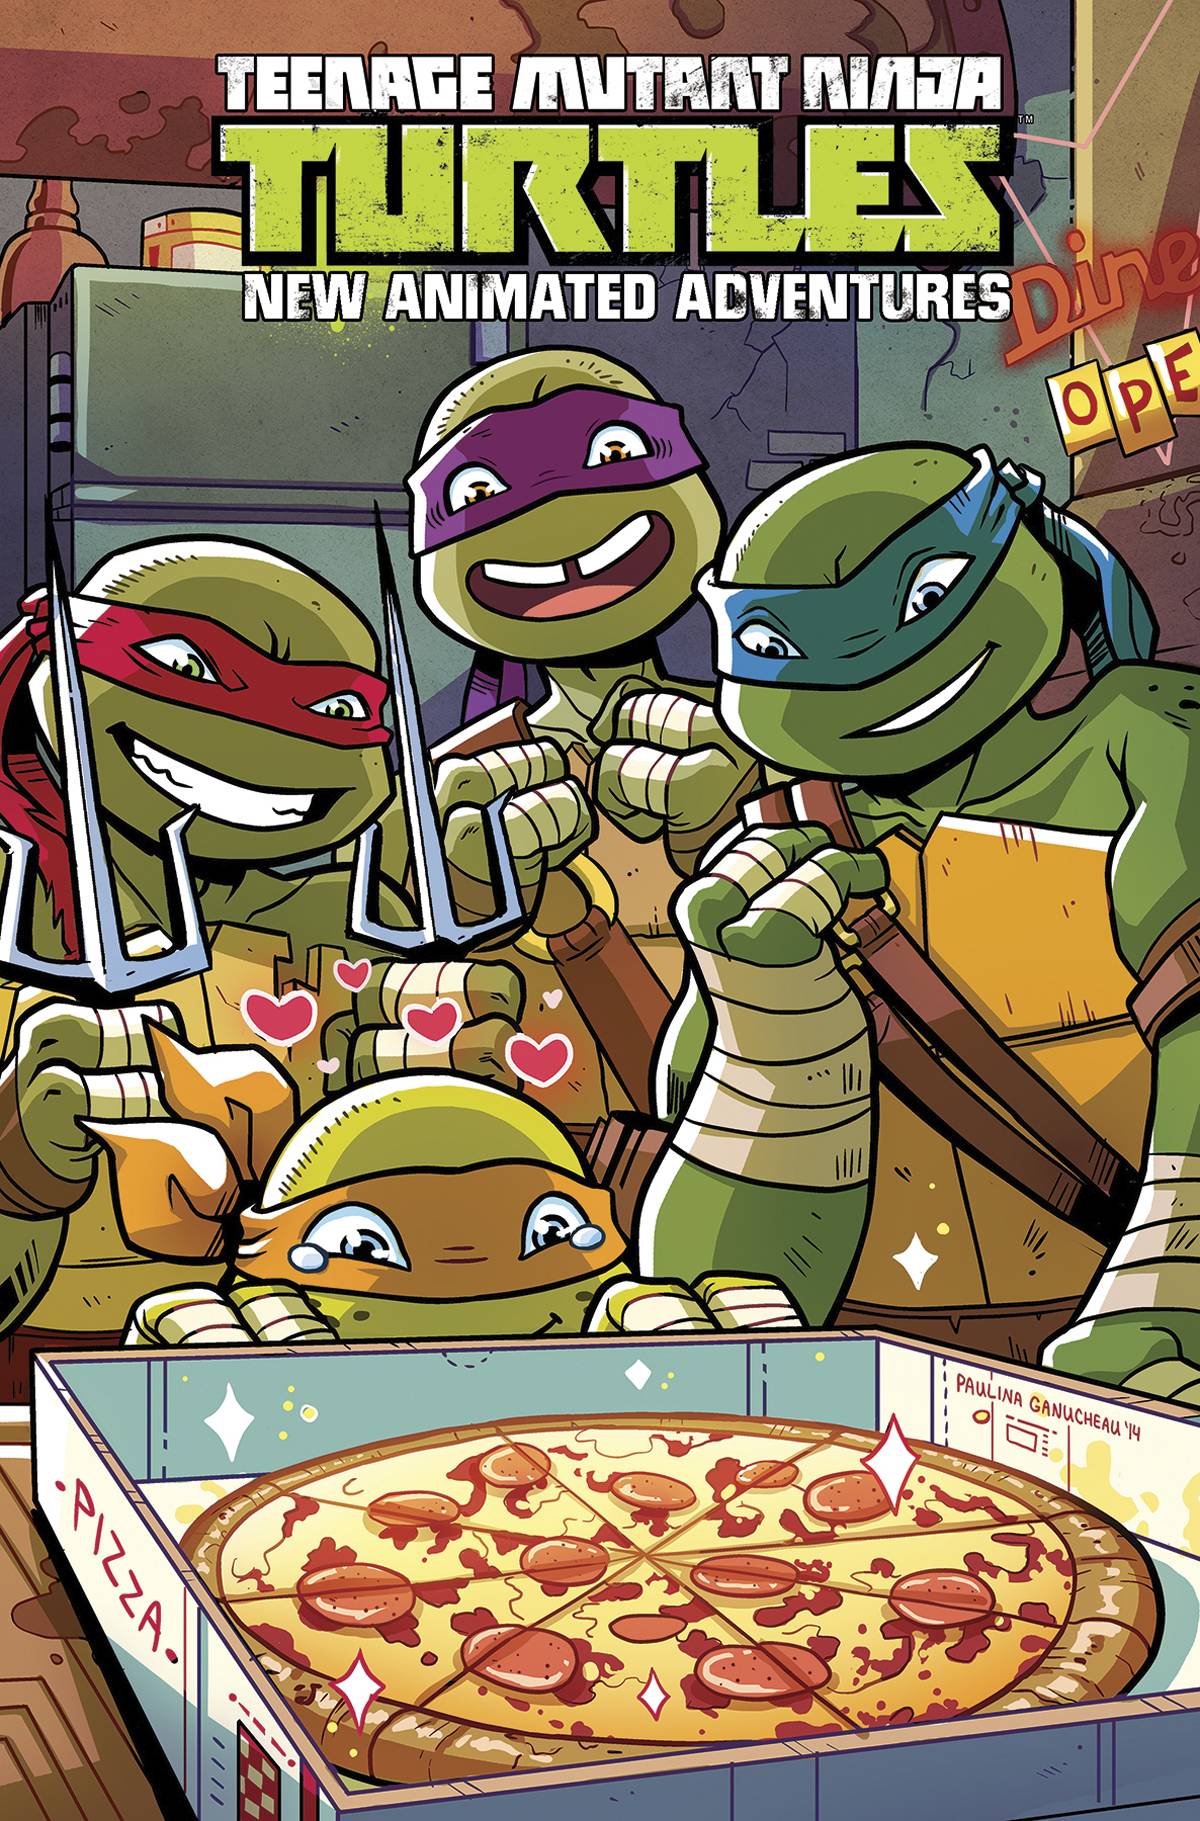 Teenage Mutant Ninja Turtles New Animated Adventure Omnibus Graphic Novel Volume 2